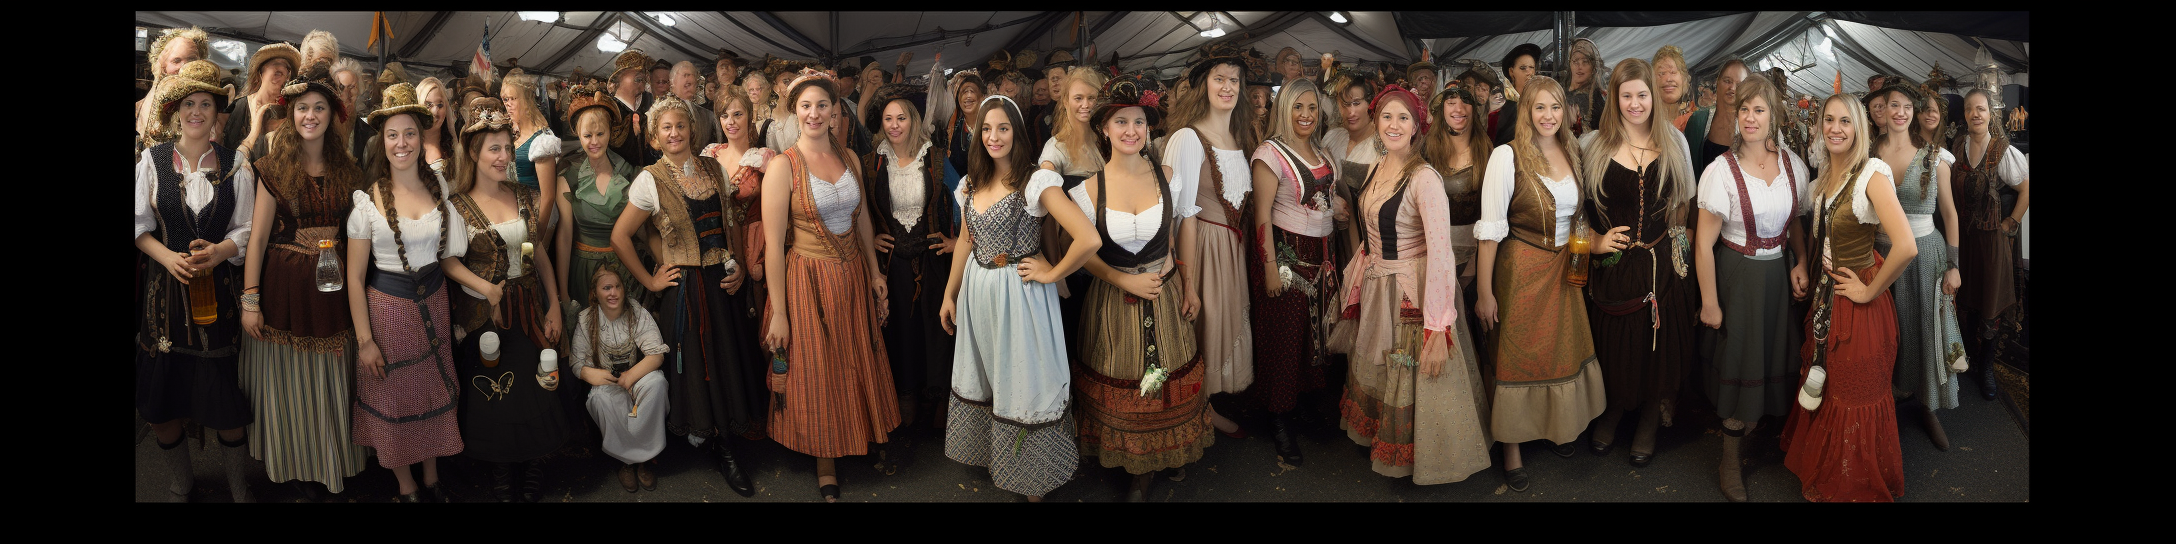 Oktoberfest fancy dress costumes for women